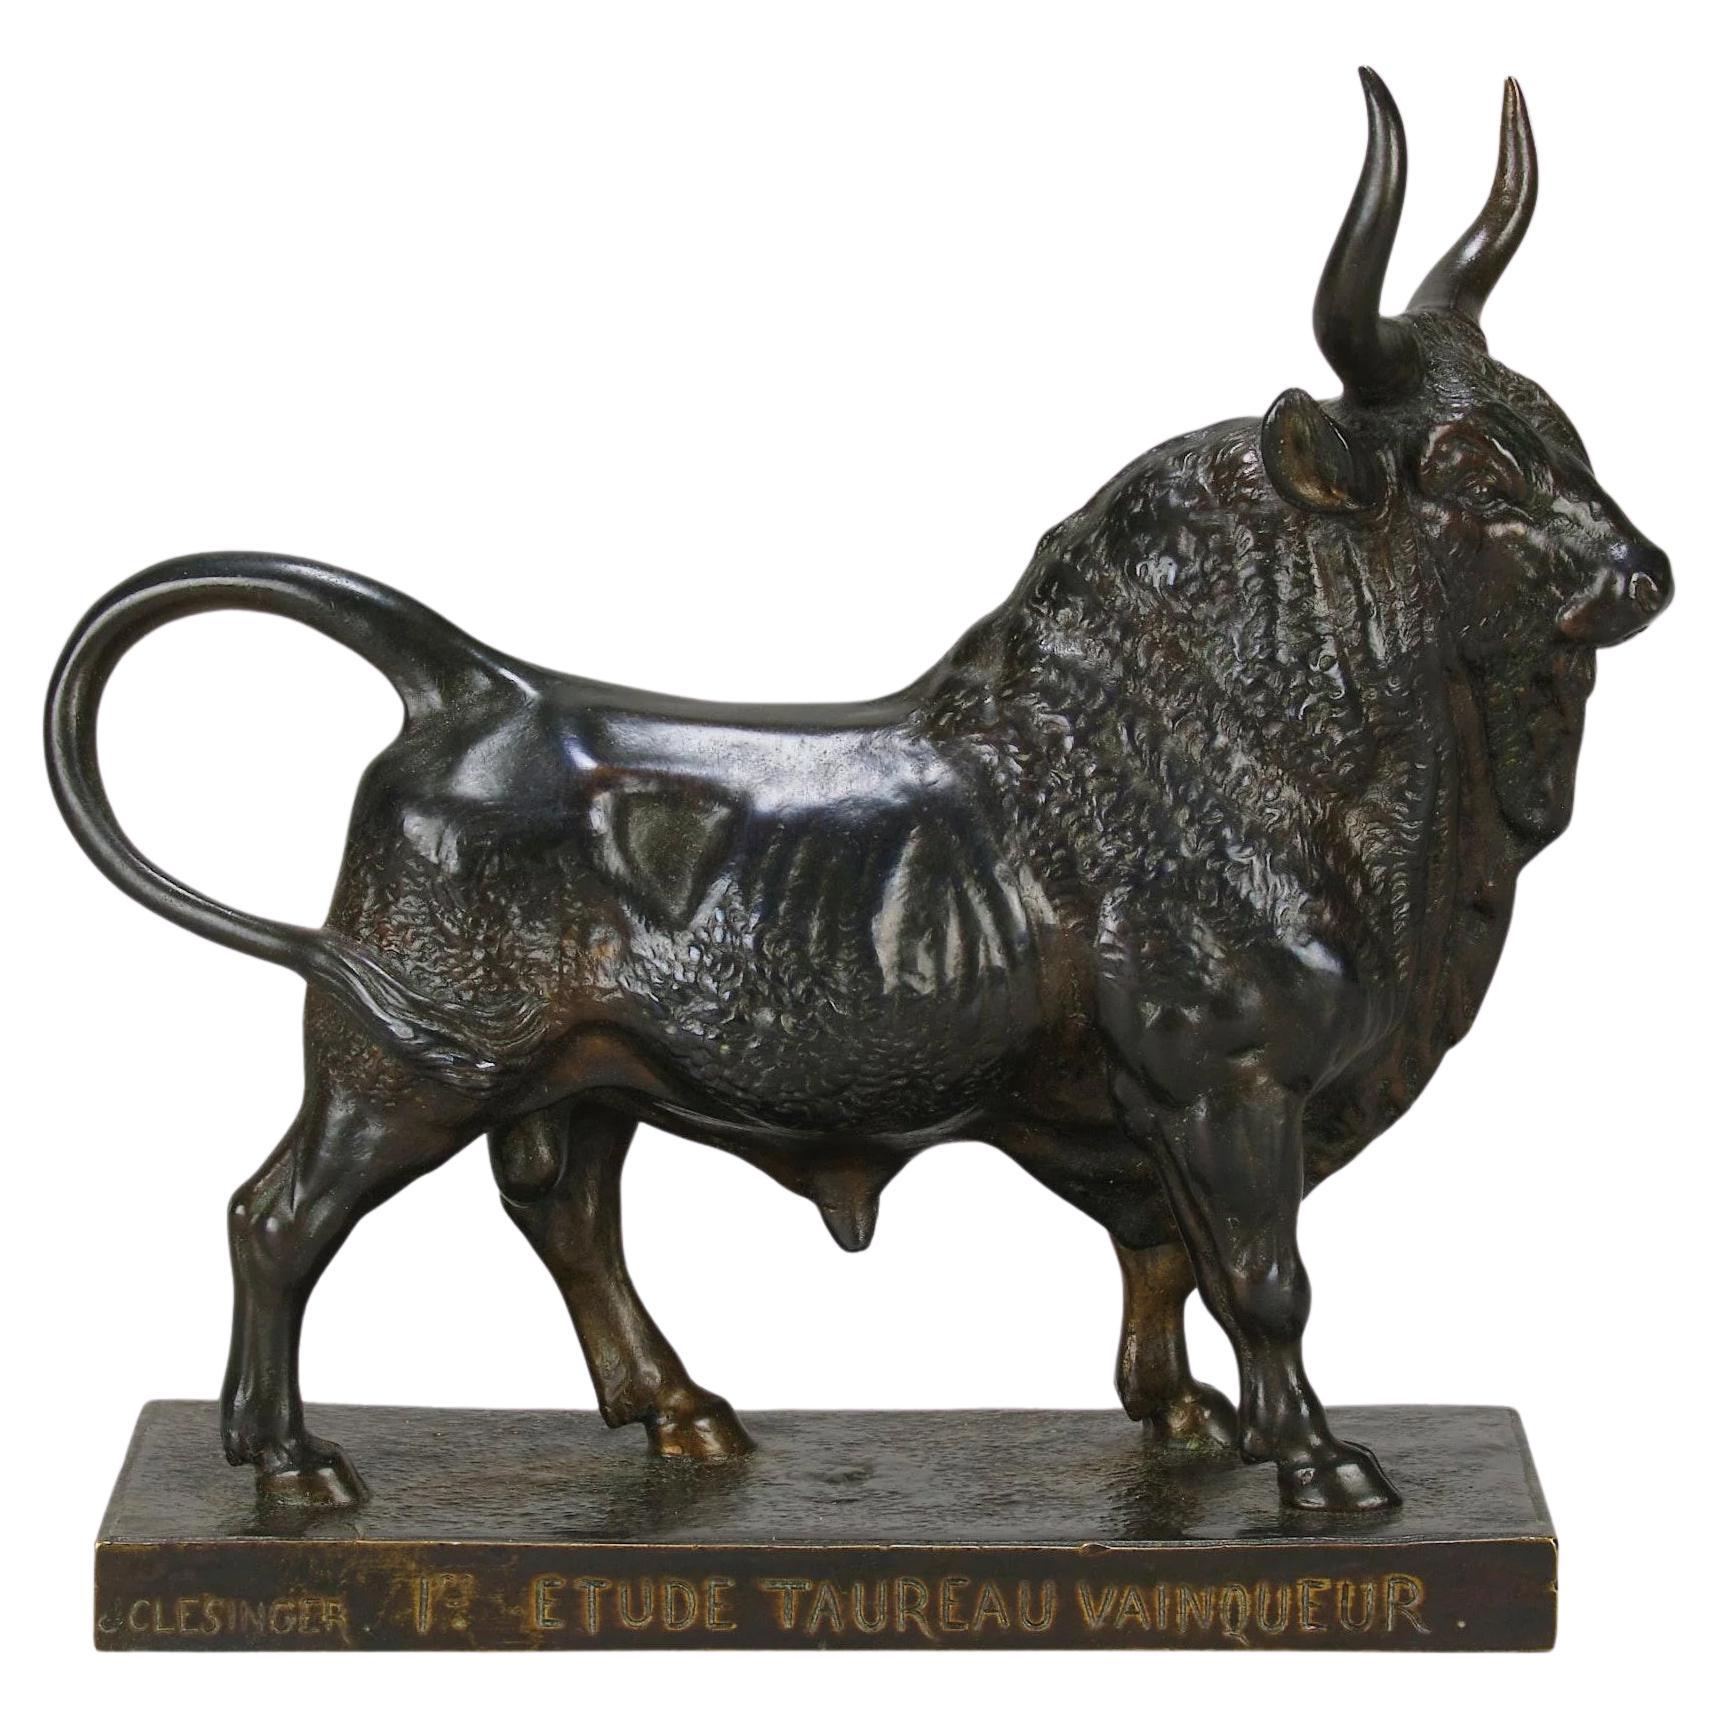 19th Century Animalier Bronze "Taureau Vainqueur" by Jean-Baptiste Clesinger For Sale